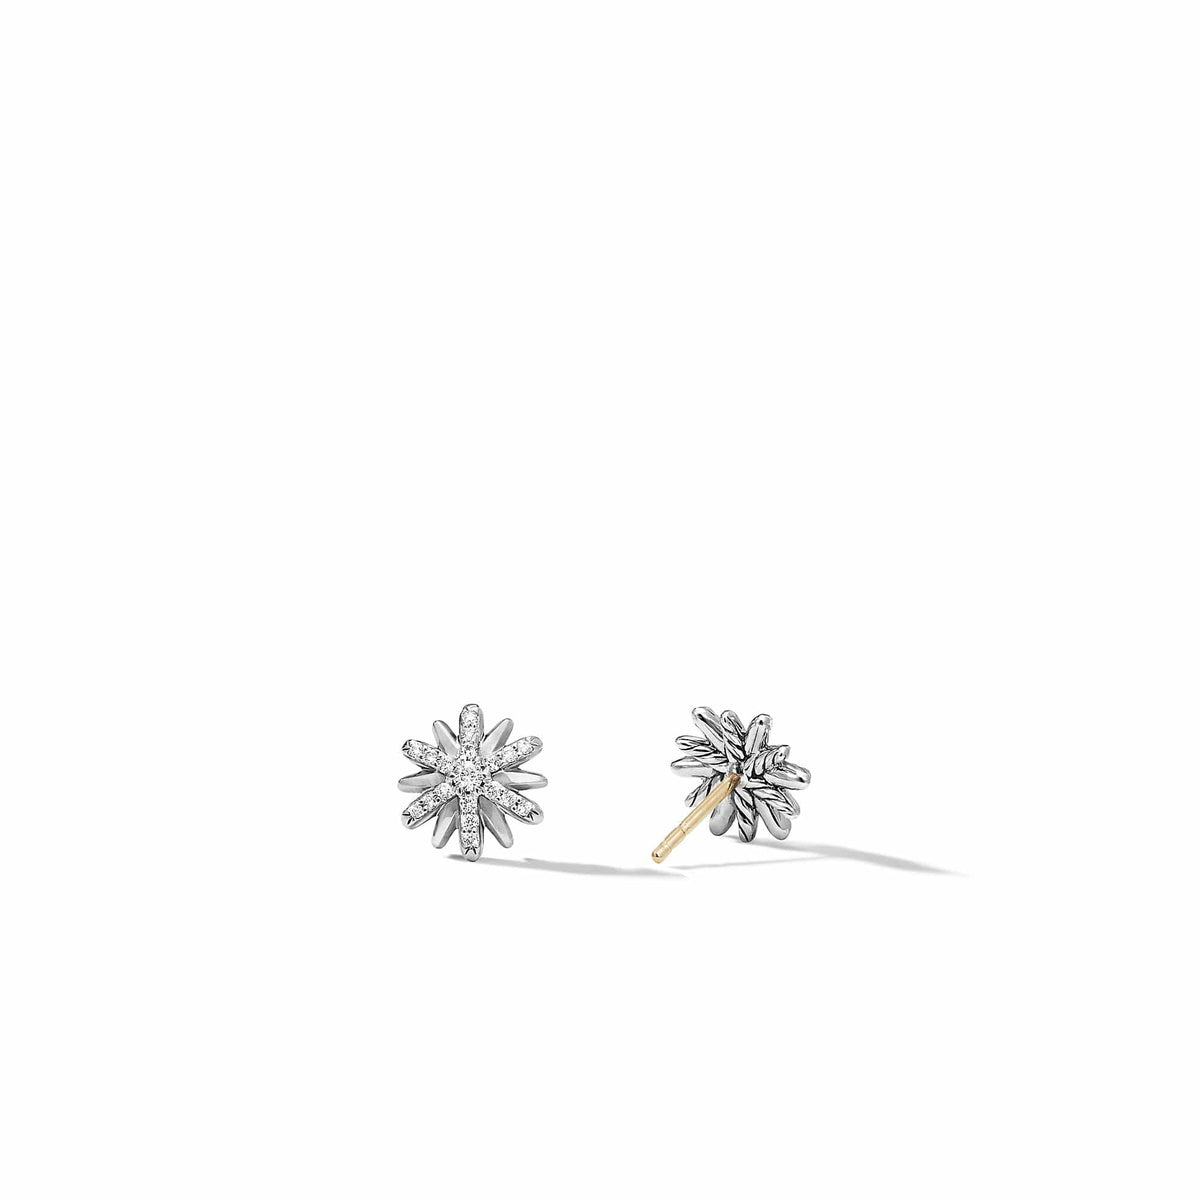 Petite Starburst Stud Earrings with Pavé Diamonds